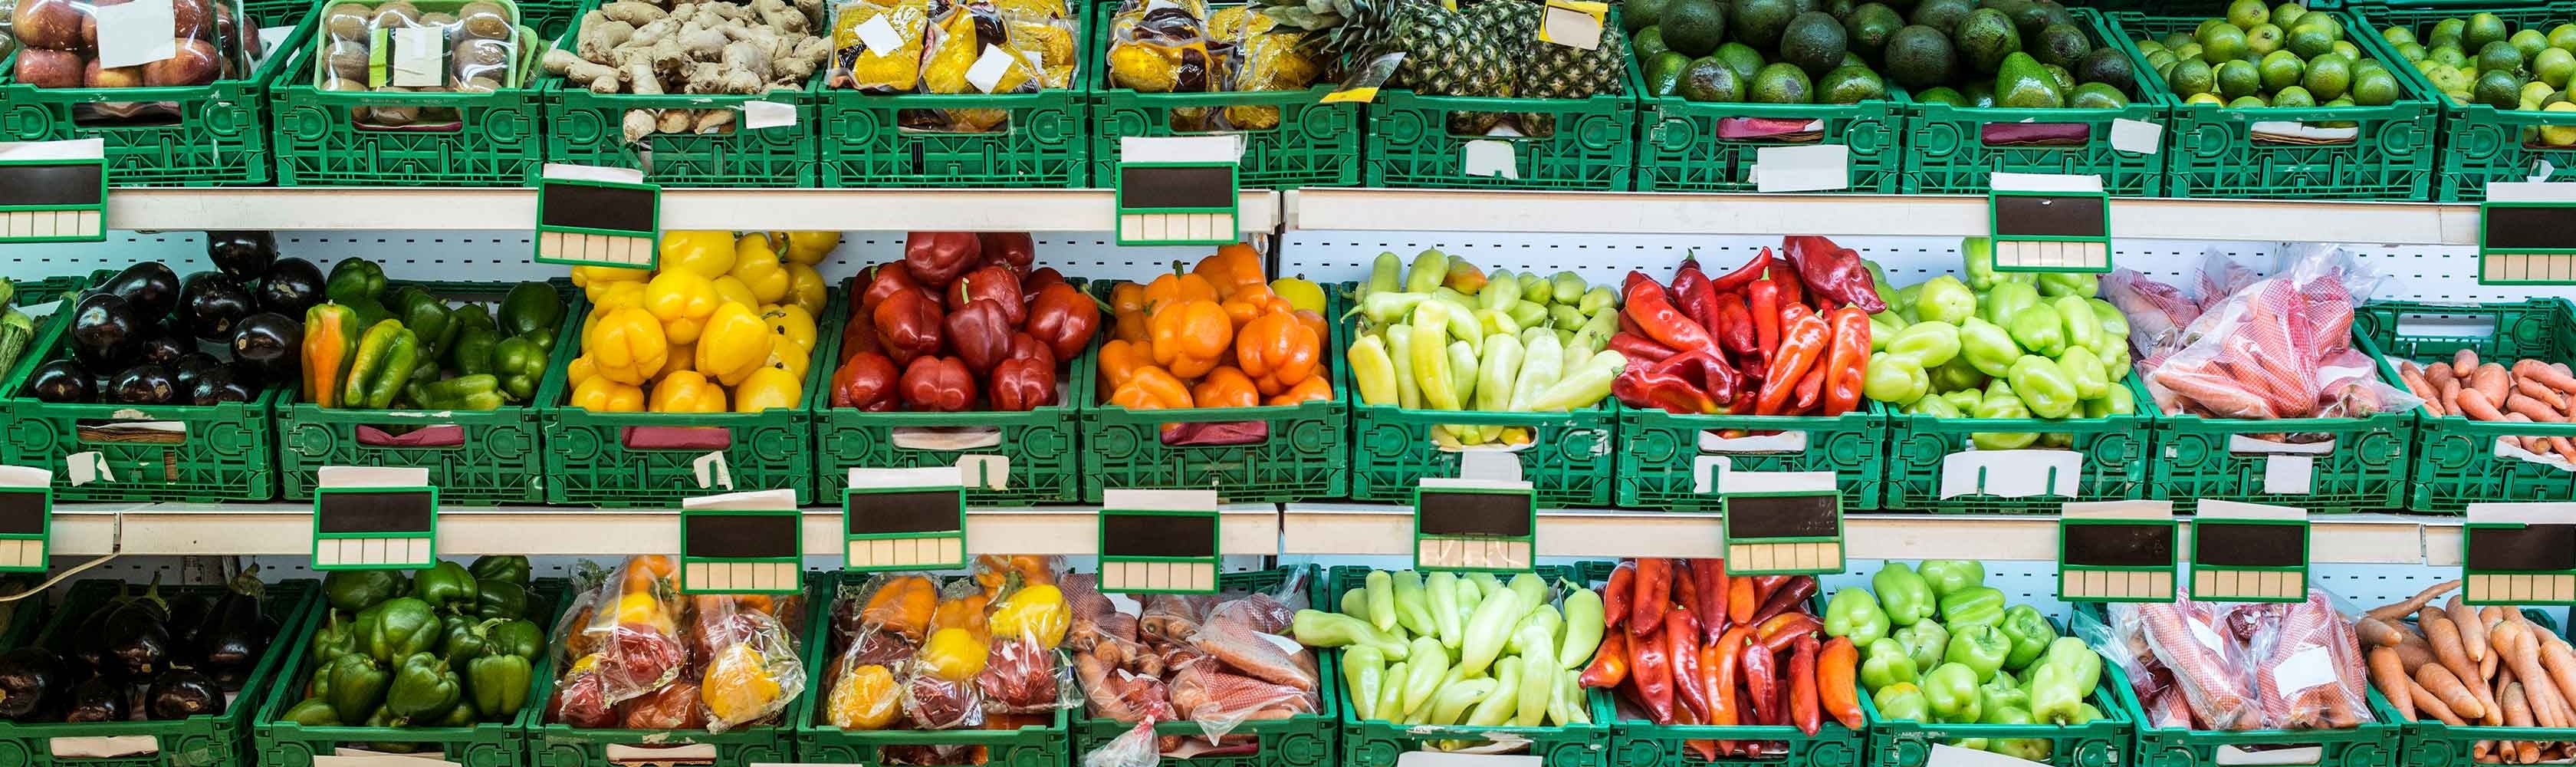 Umfassendes Obst- und Gemüseangebot im Supermarkt. 